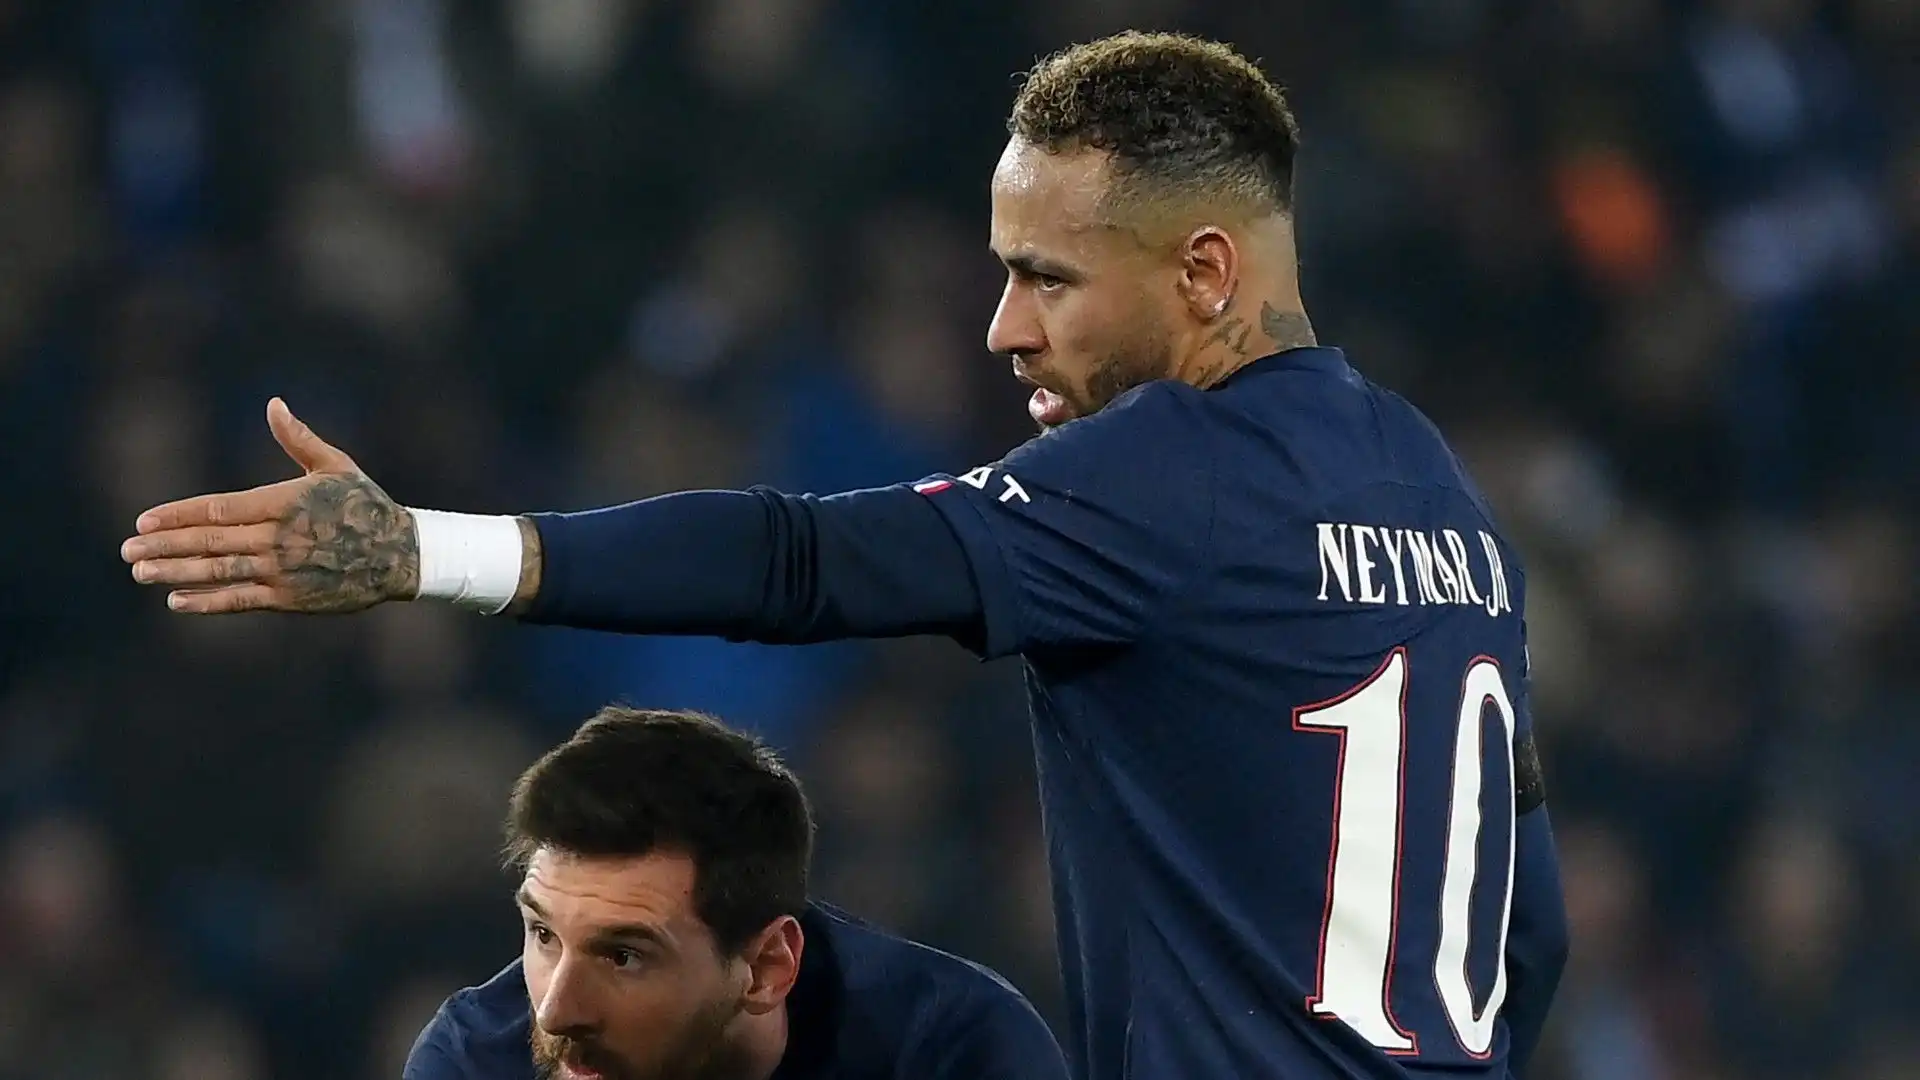 Il Chelsea vorrebbe acquistare Neymar